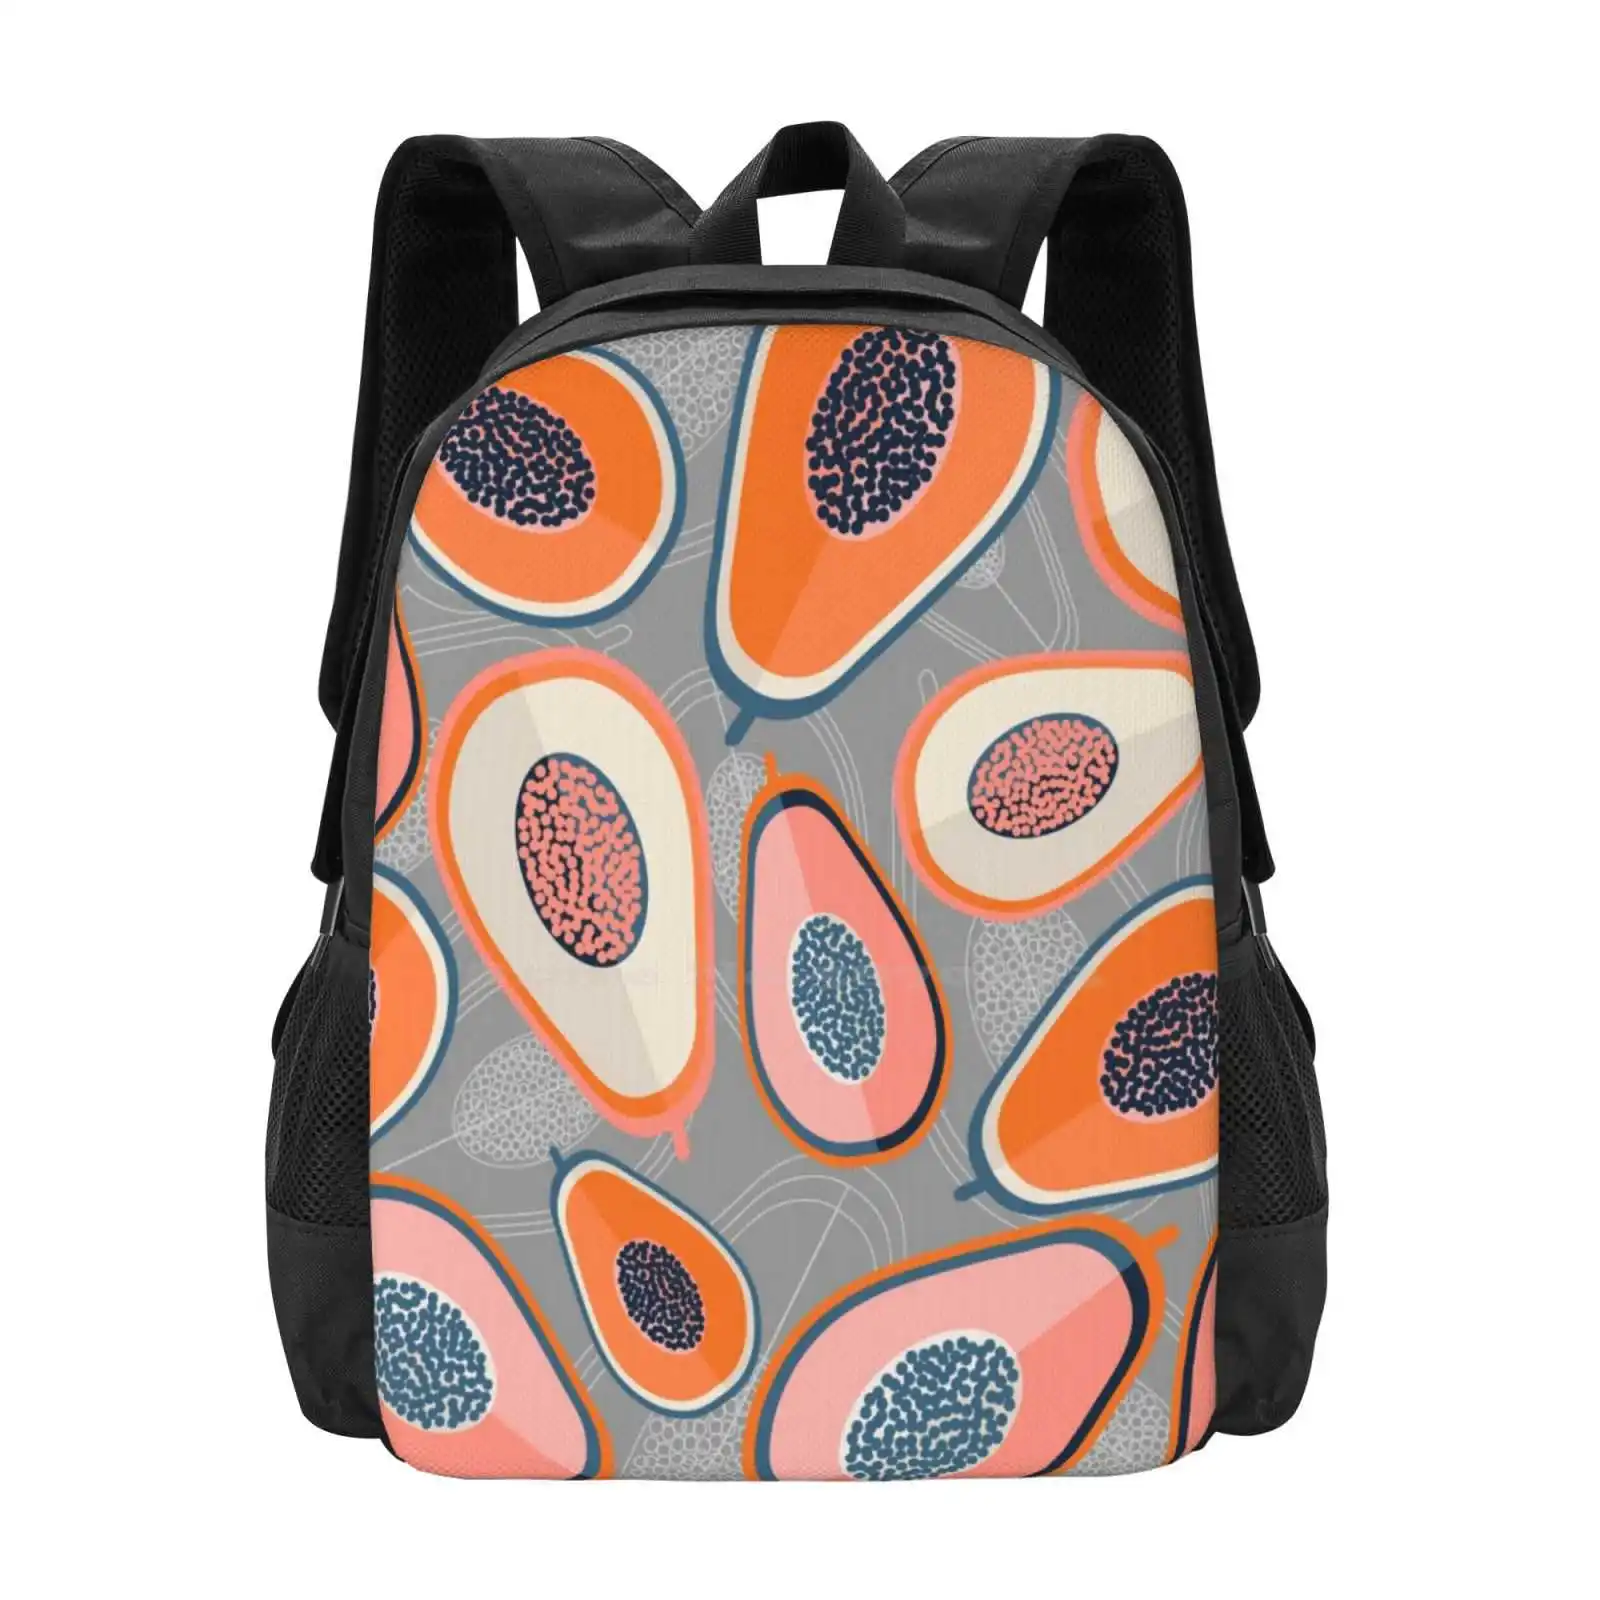 

Школьная сумка Papayas, вместительный рюкзак для ноутбука, цветные блоки с фруктовым узором, папайя, коралловый, оранжевый, кремовый